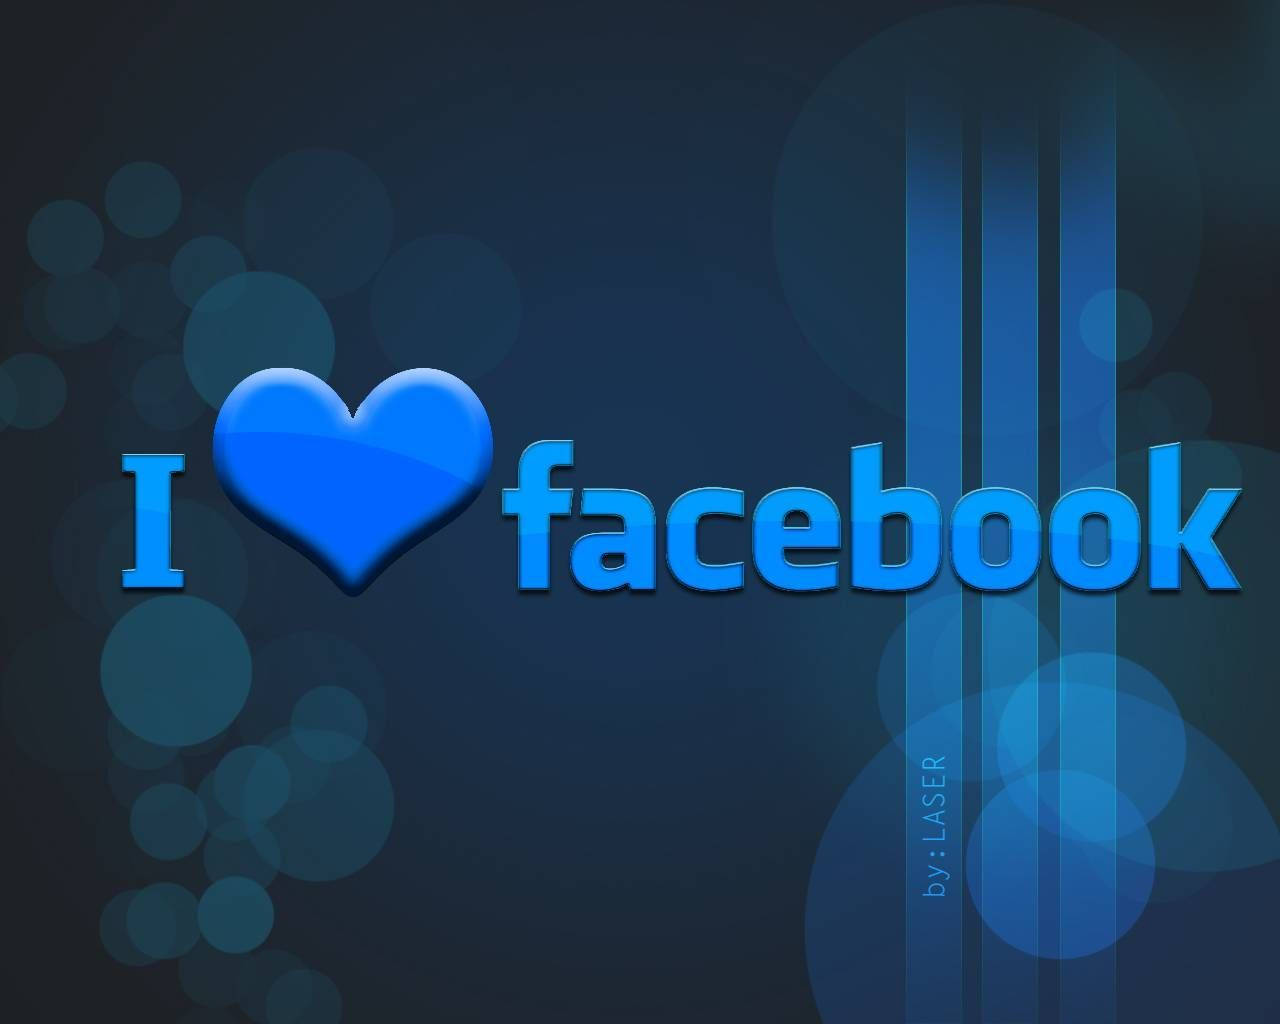 I Love Facebook Blue Art Background